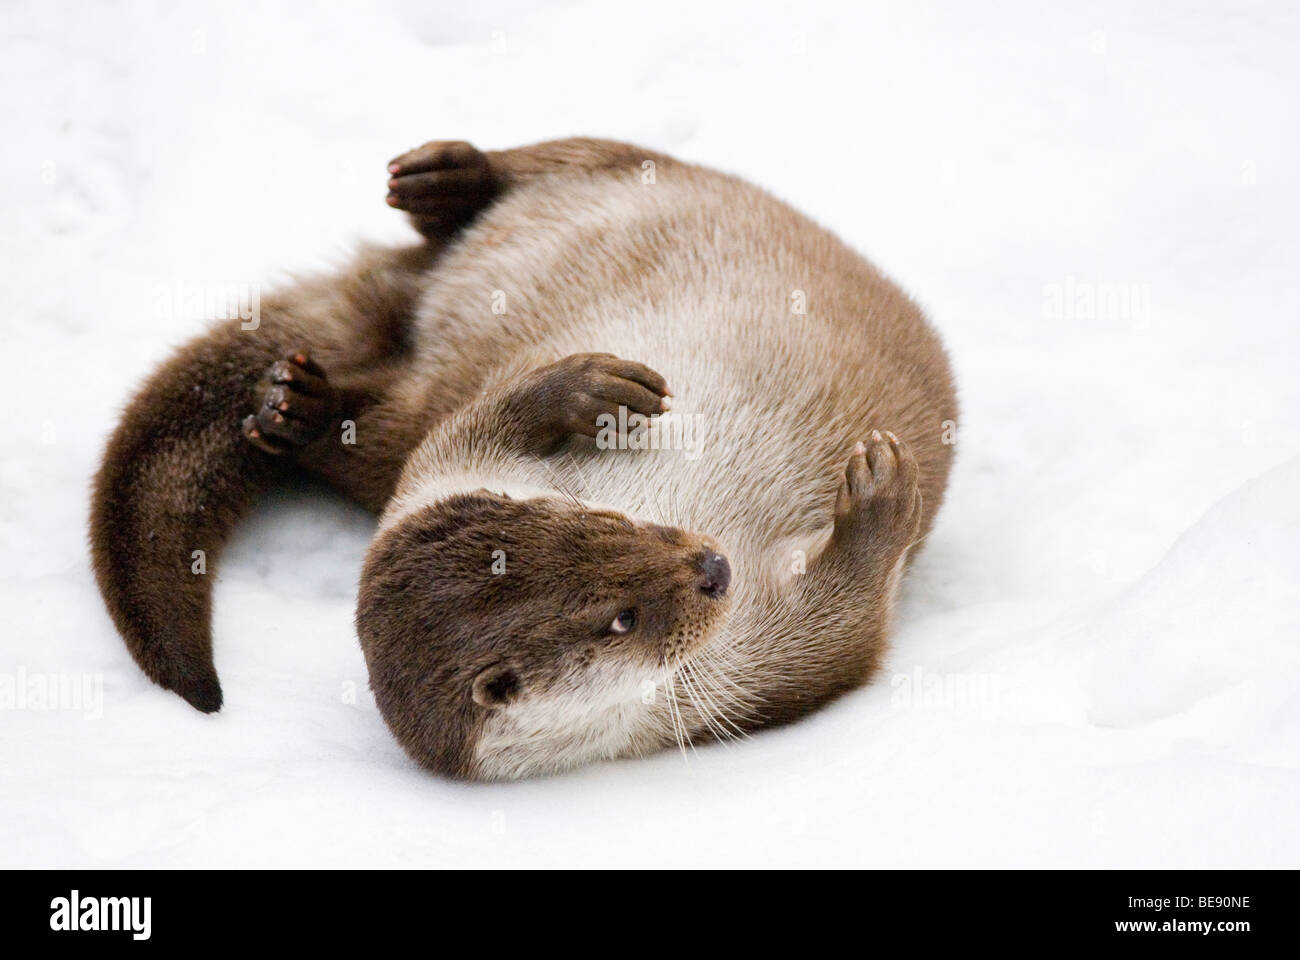 Otter en speelt en ; otter jouent dans la neige Banque D'Images